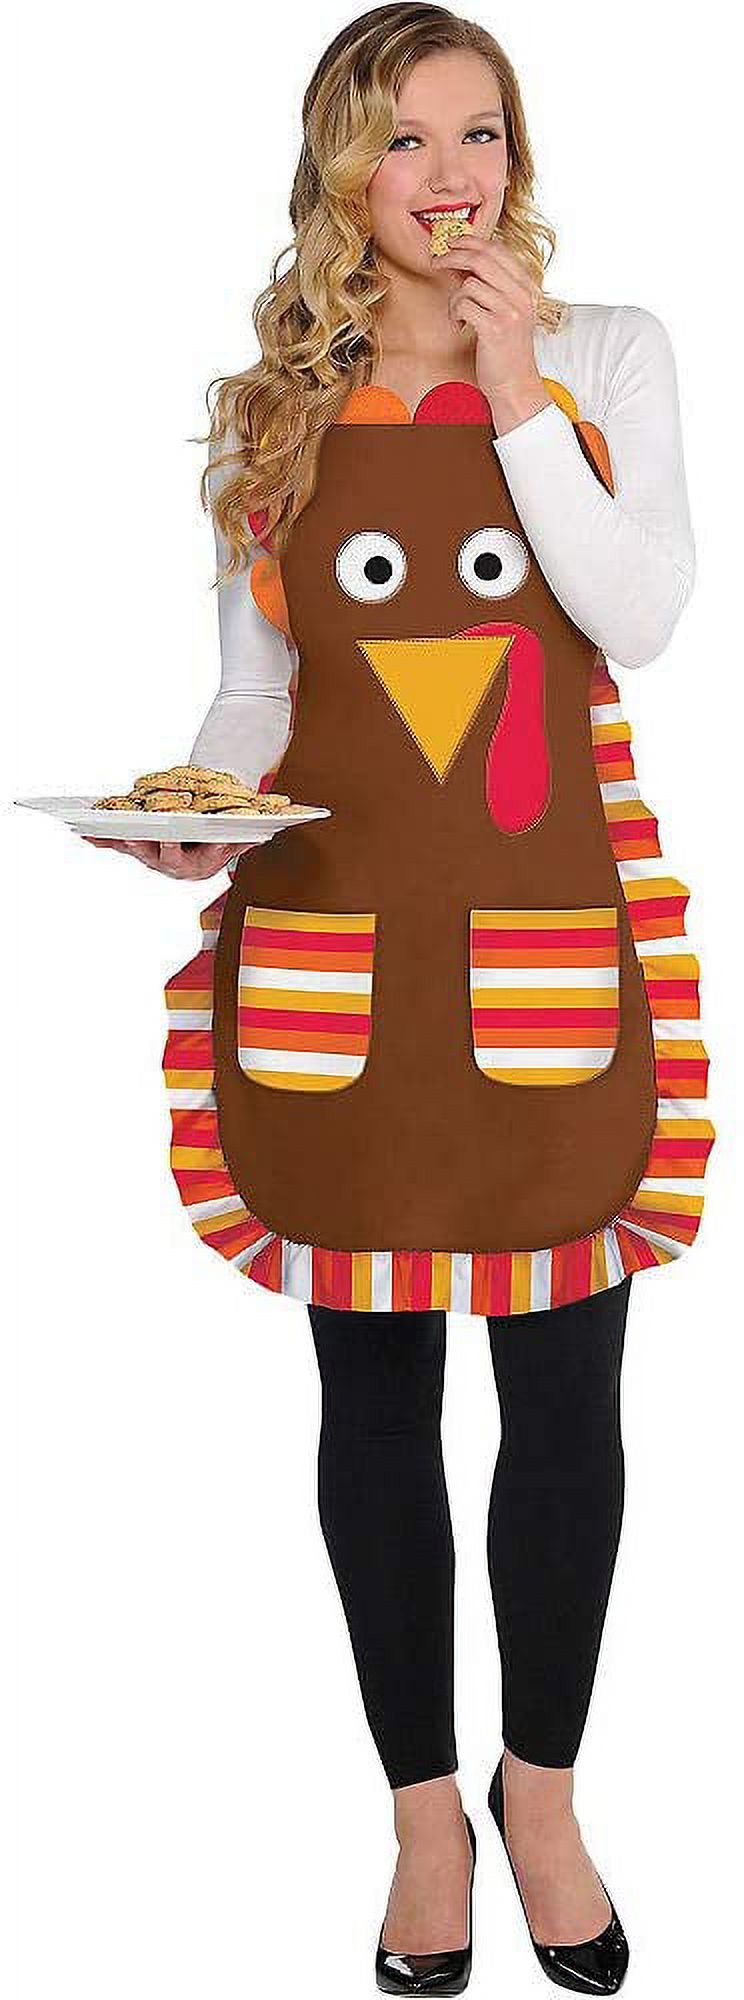 Amscan Thanksgiving Turkey Apron, Brown - image 2 of 2